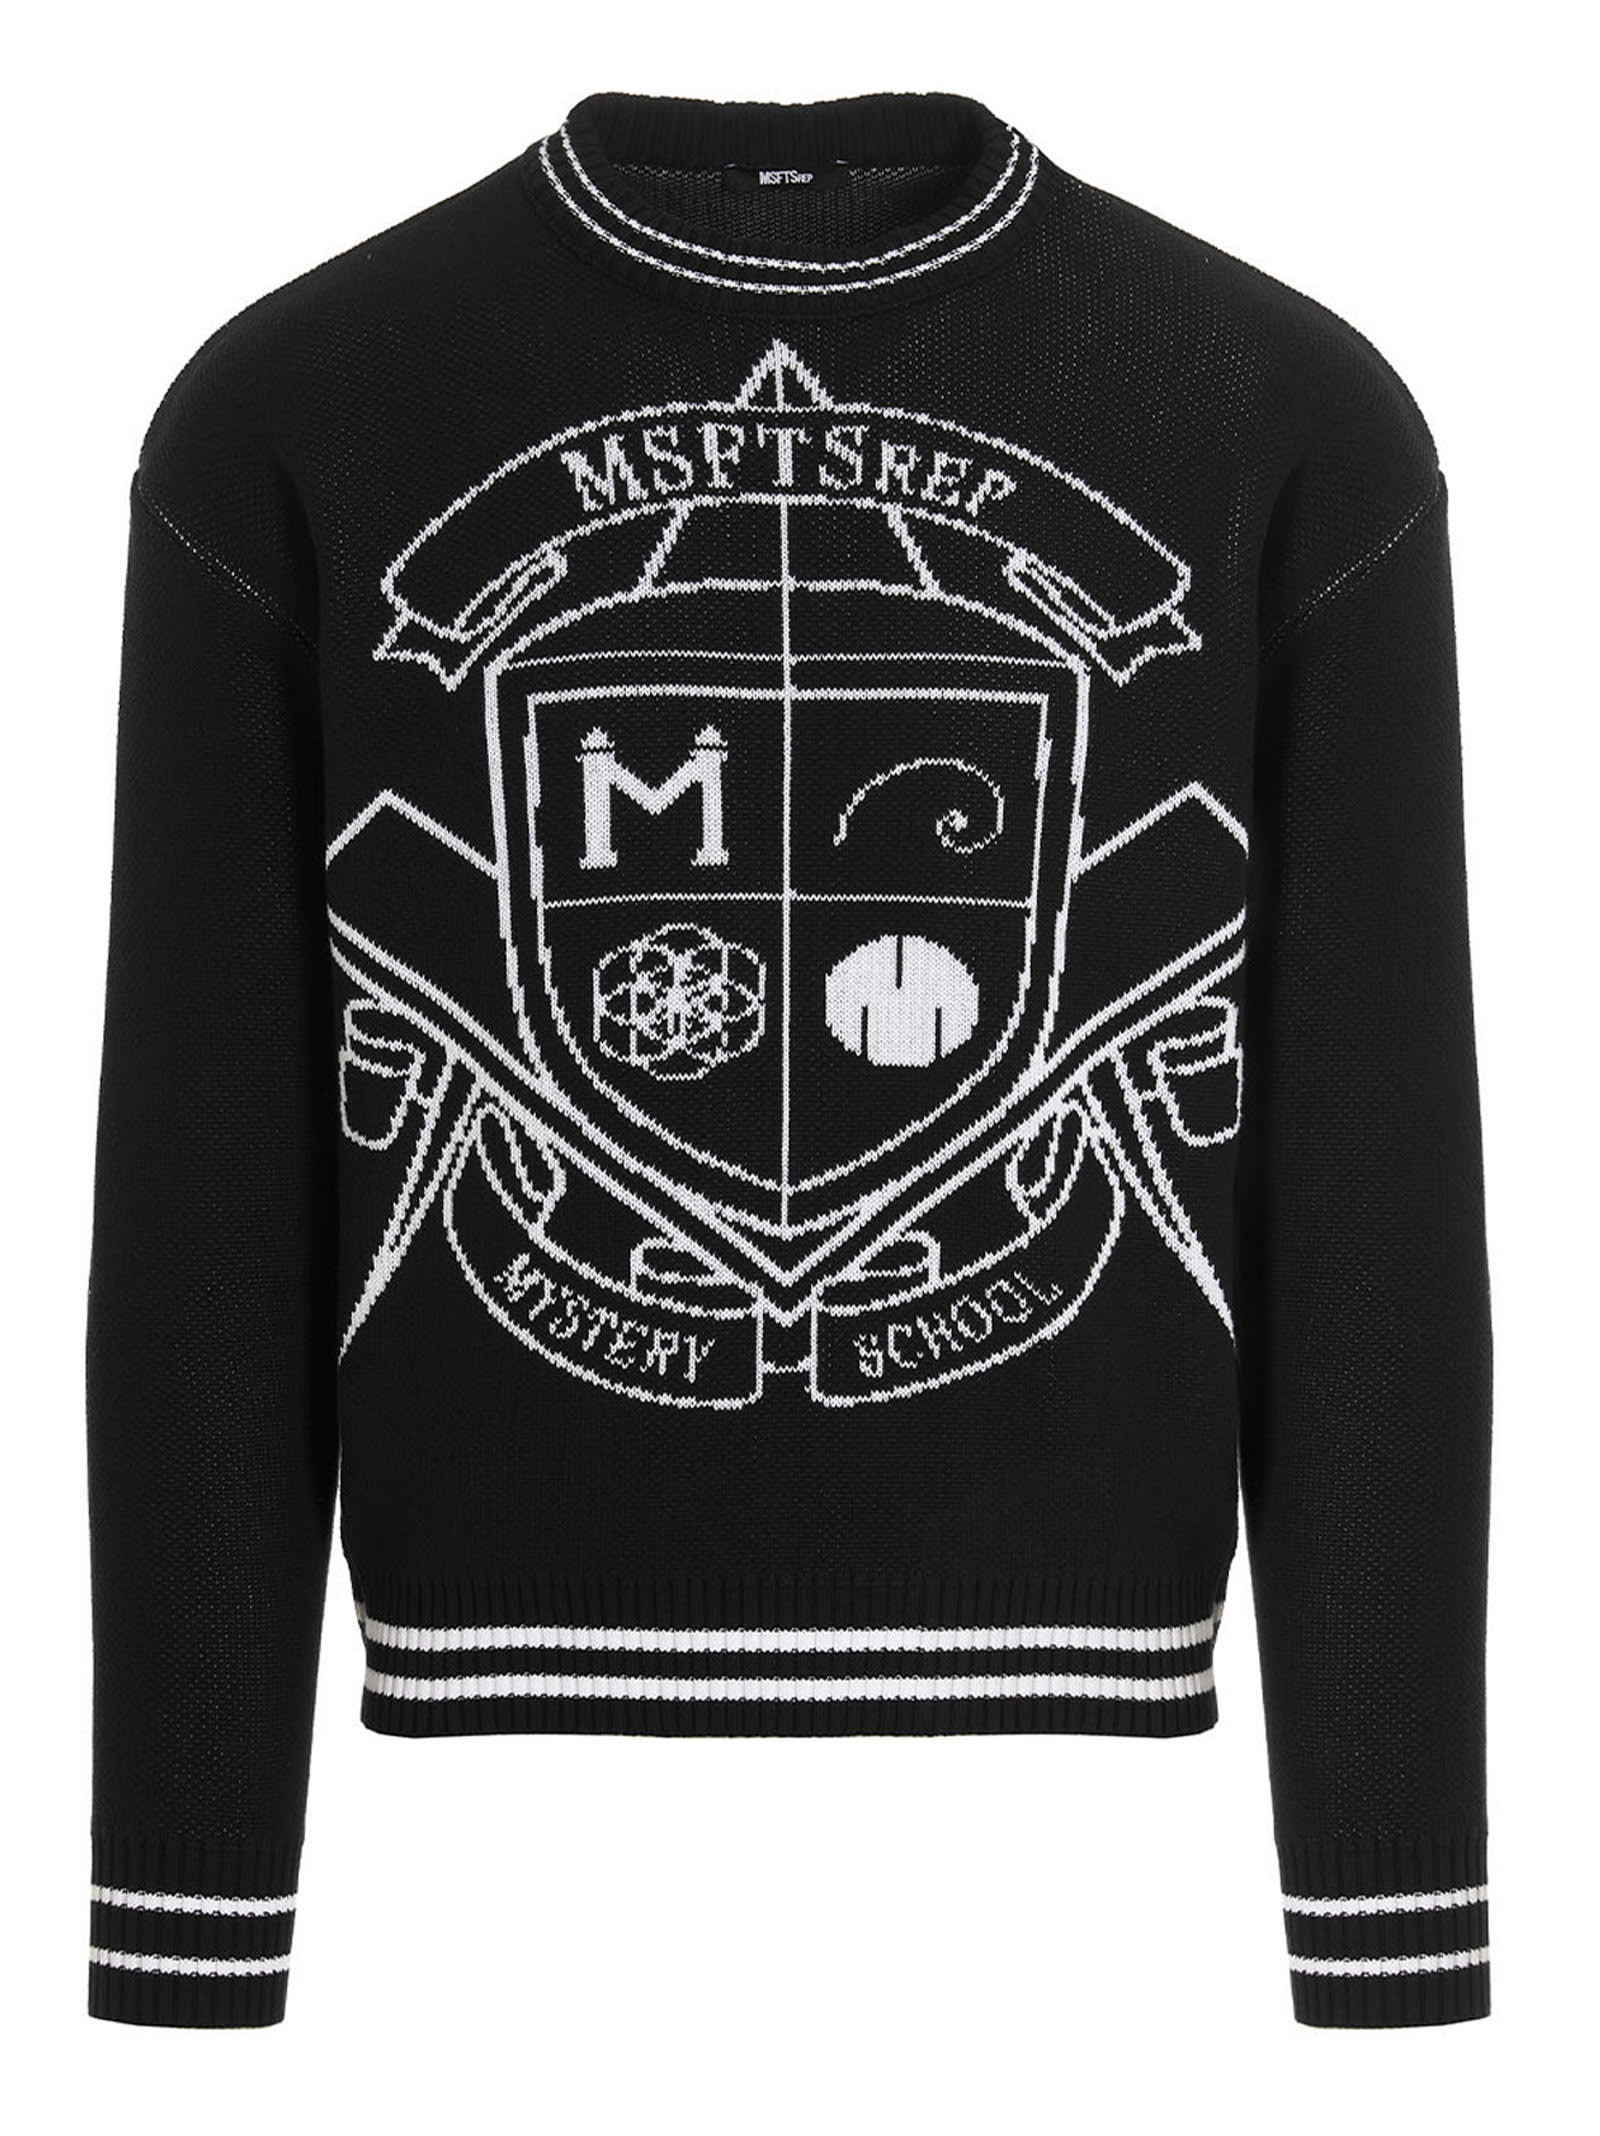 MSFTSrep Jacquard Logo Sweater